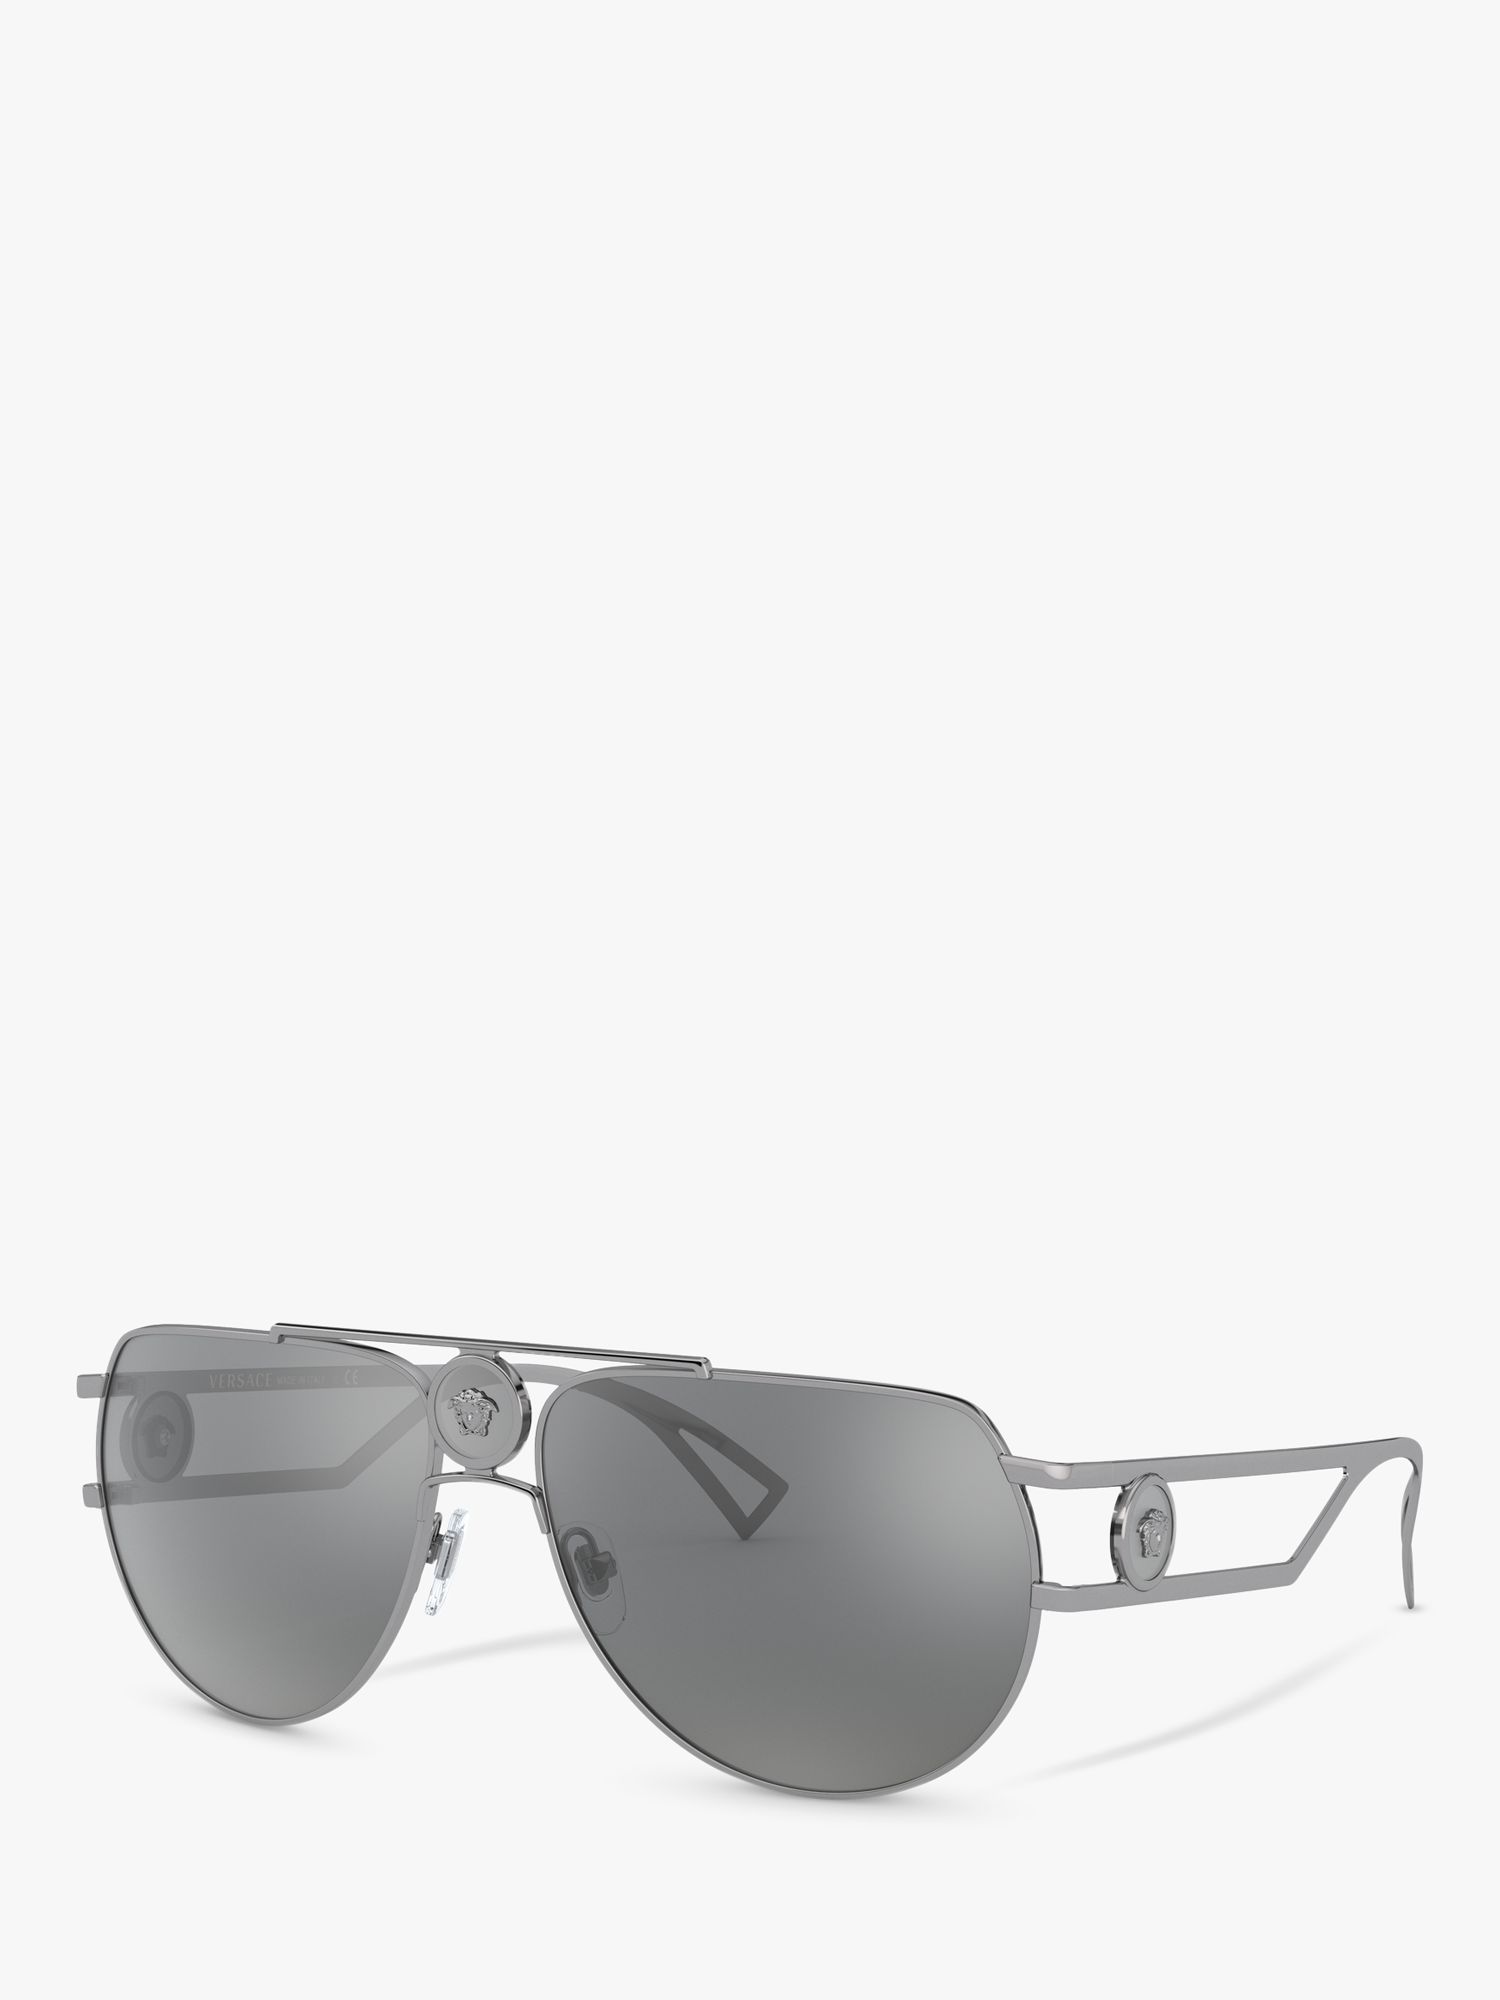 Versace VE2225 Men's Aviator Sunglasses, Gunmetal/Grey at John Lewis ...